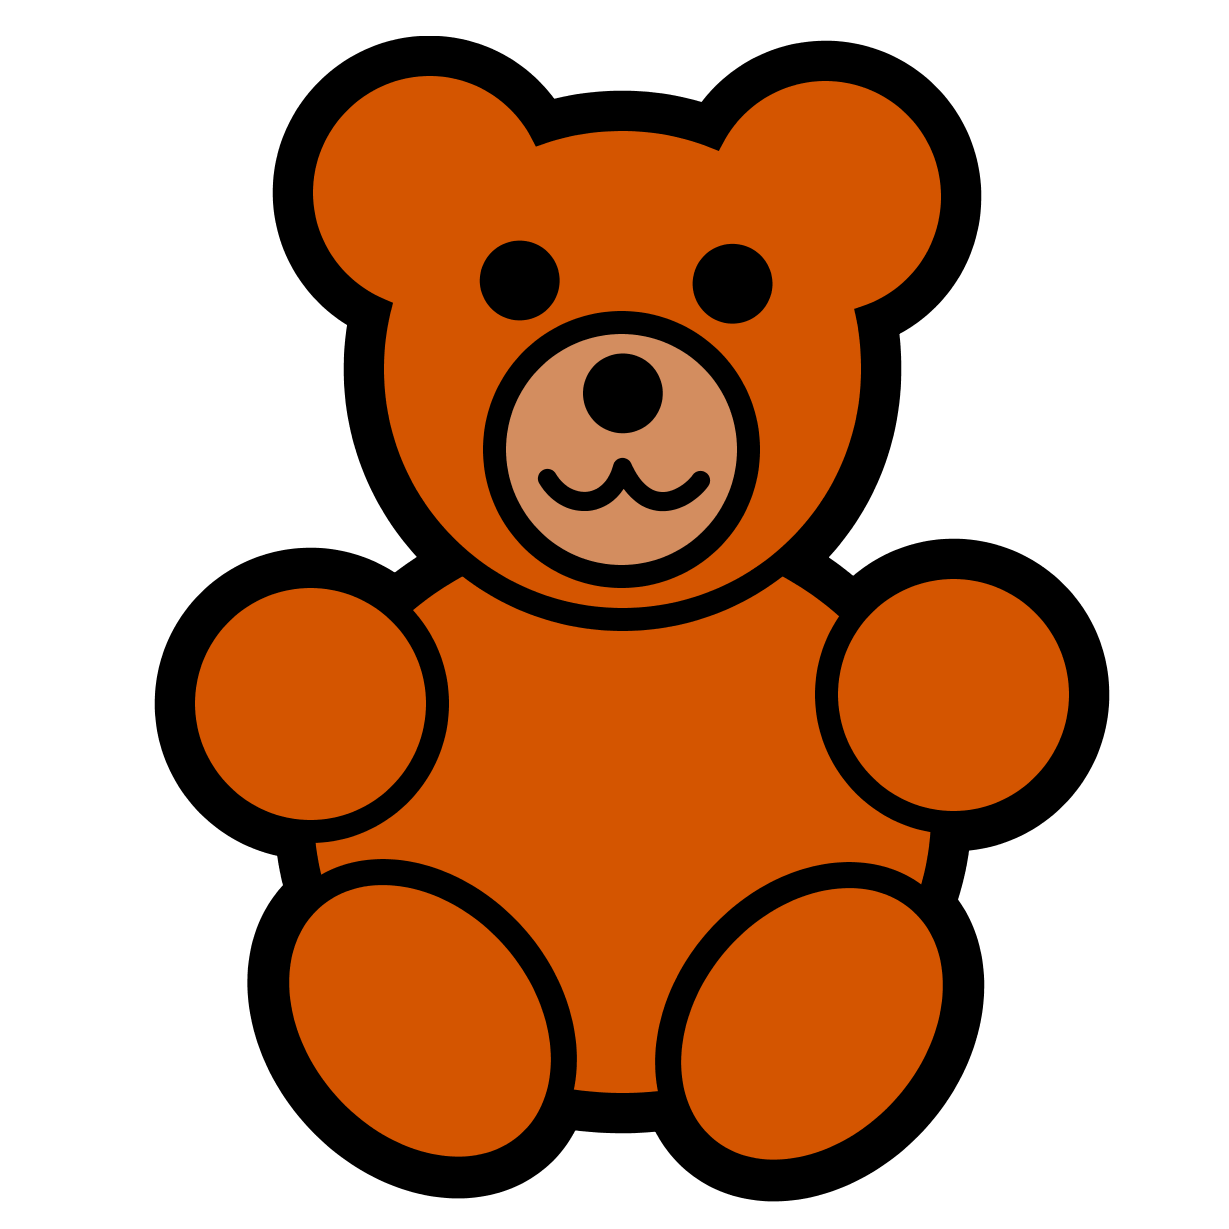 Big Cute Teddy Bears Free Cli